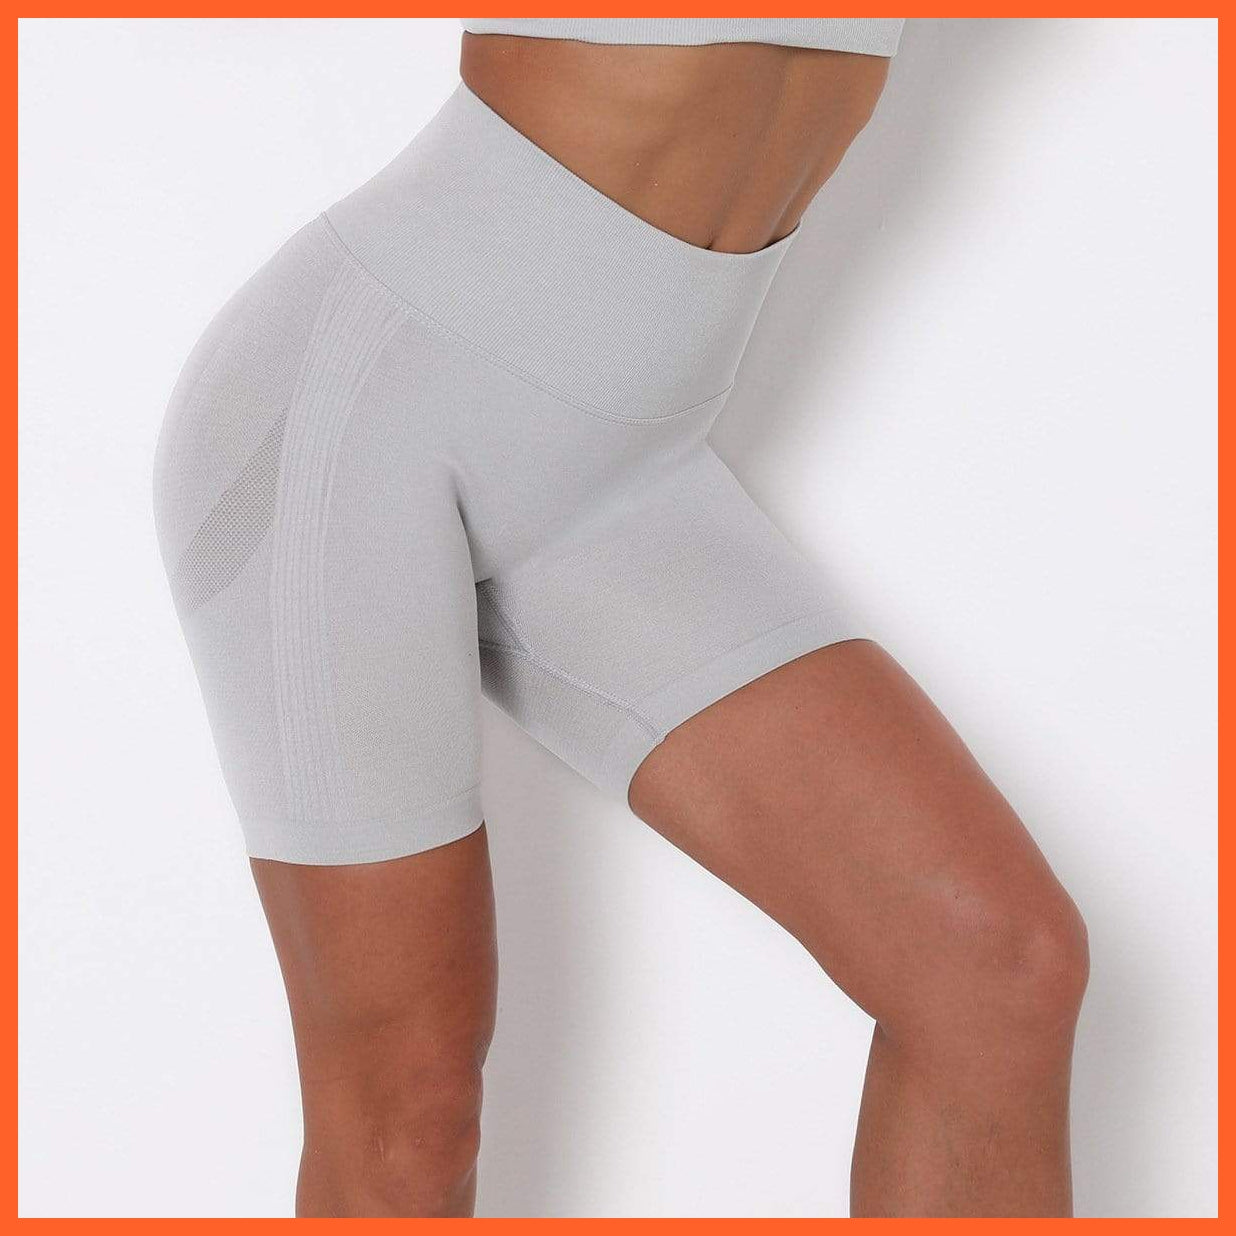 Lauren Lantechs Women Compression Exercise Shorts | Leggings & Workout Shorts Activewear | whatagift.com.au.